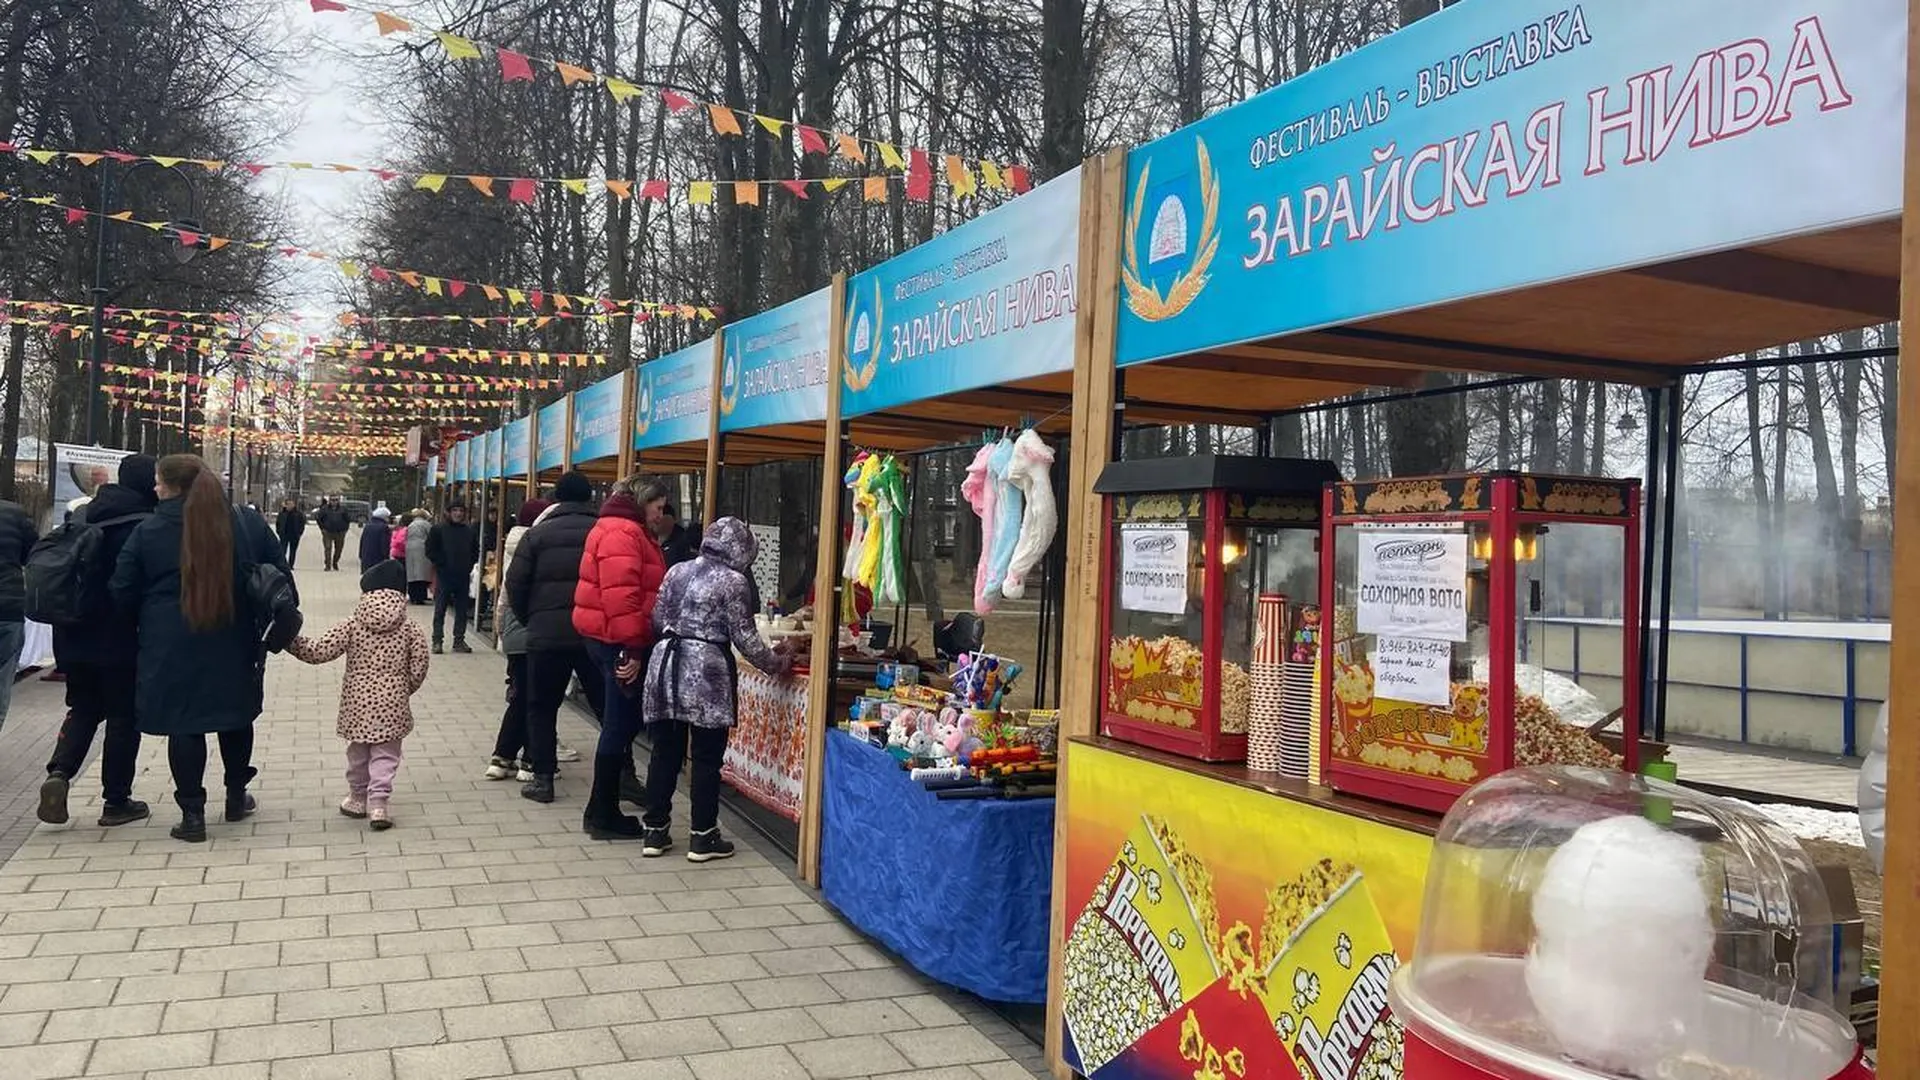 Фермерская ярмарка прошла на фестивале «Зарайская нива» в Подмосковье